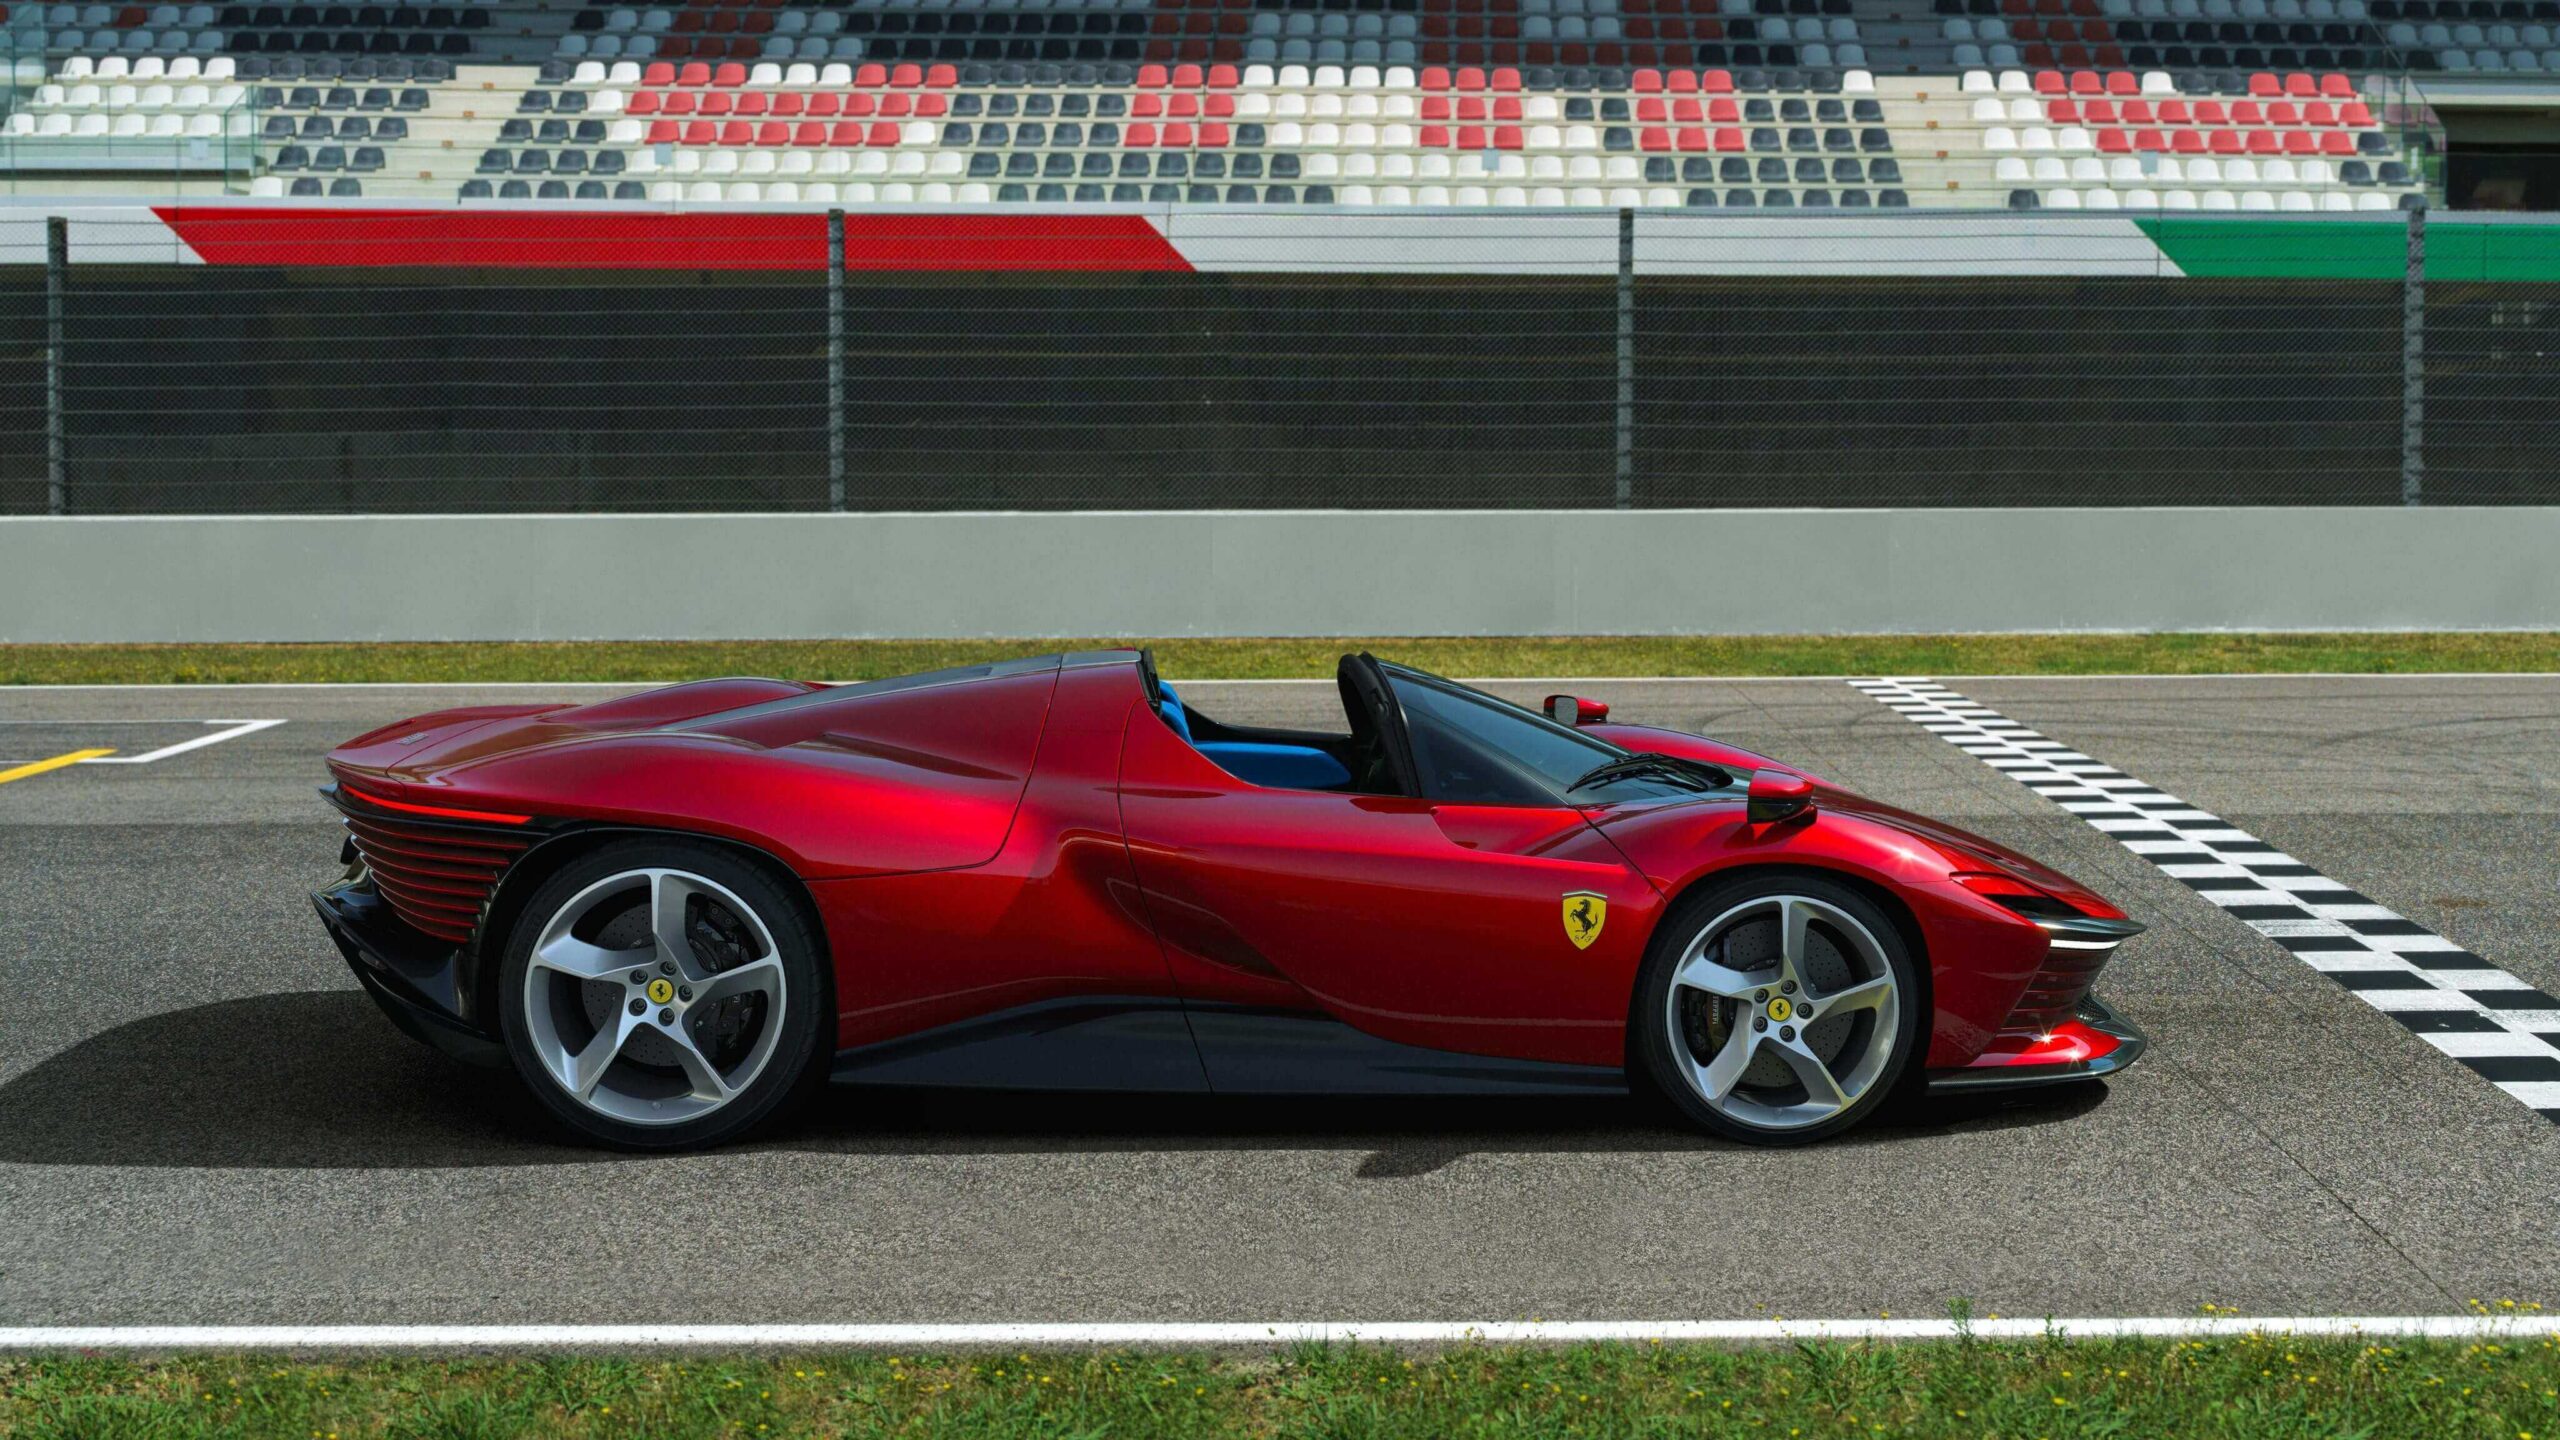 Ferrari Daytona SP3: inspired by legends